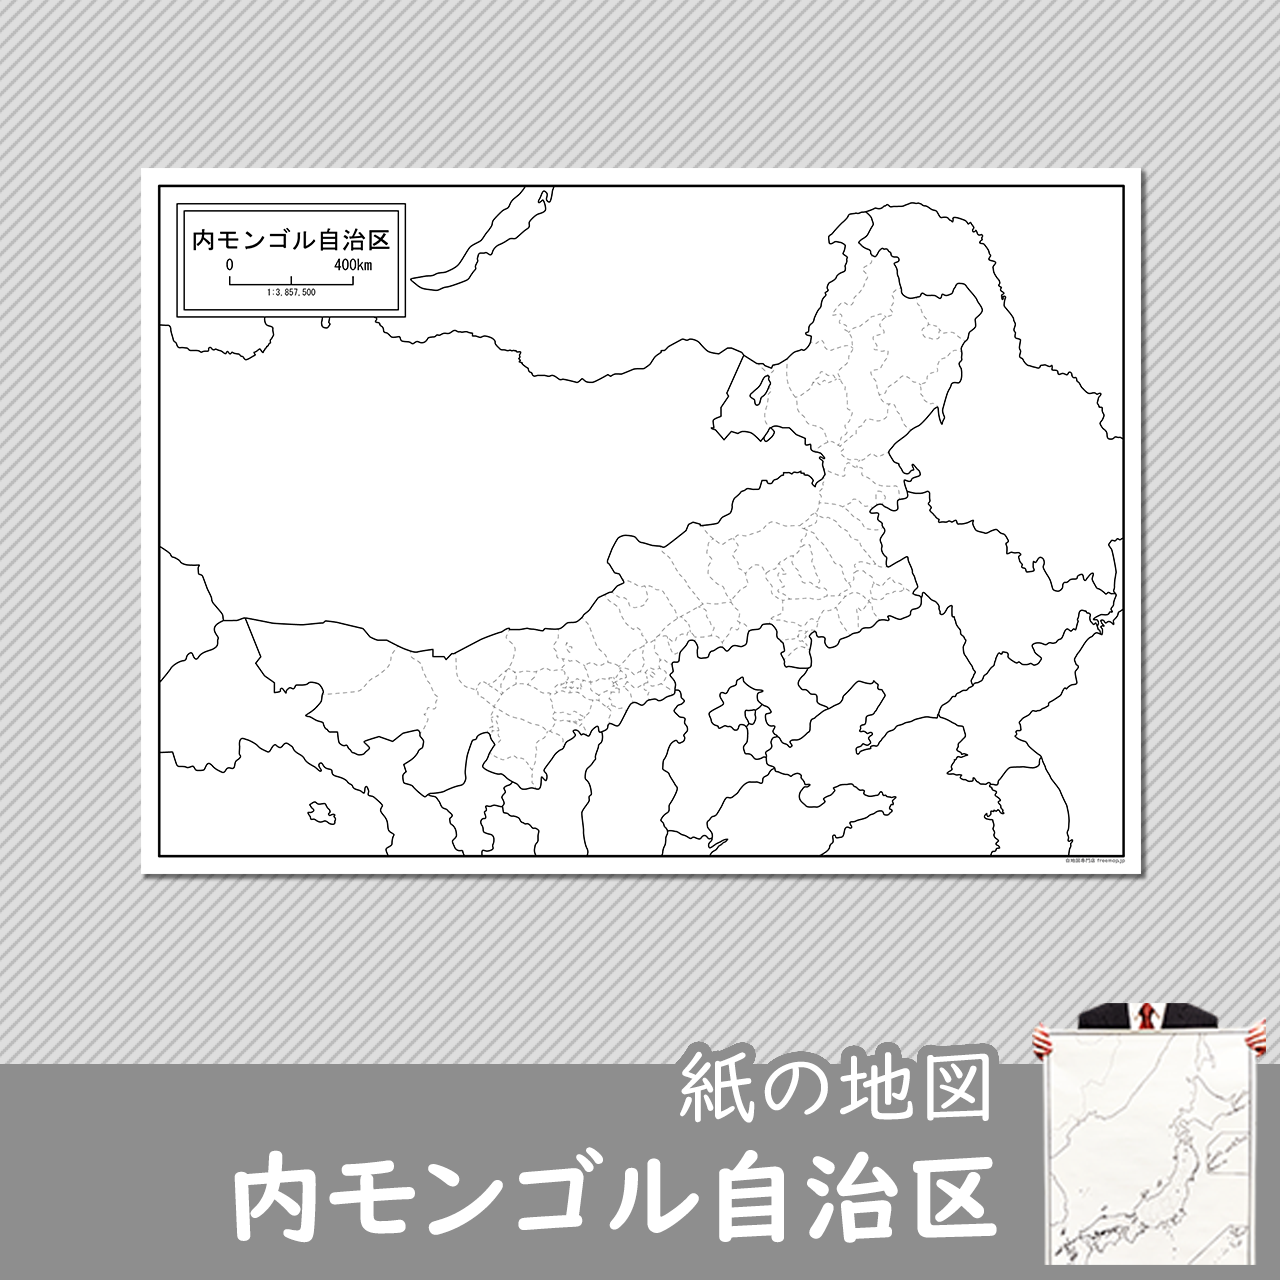 内モンゴル自治区の紙の白地図